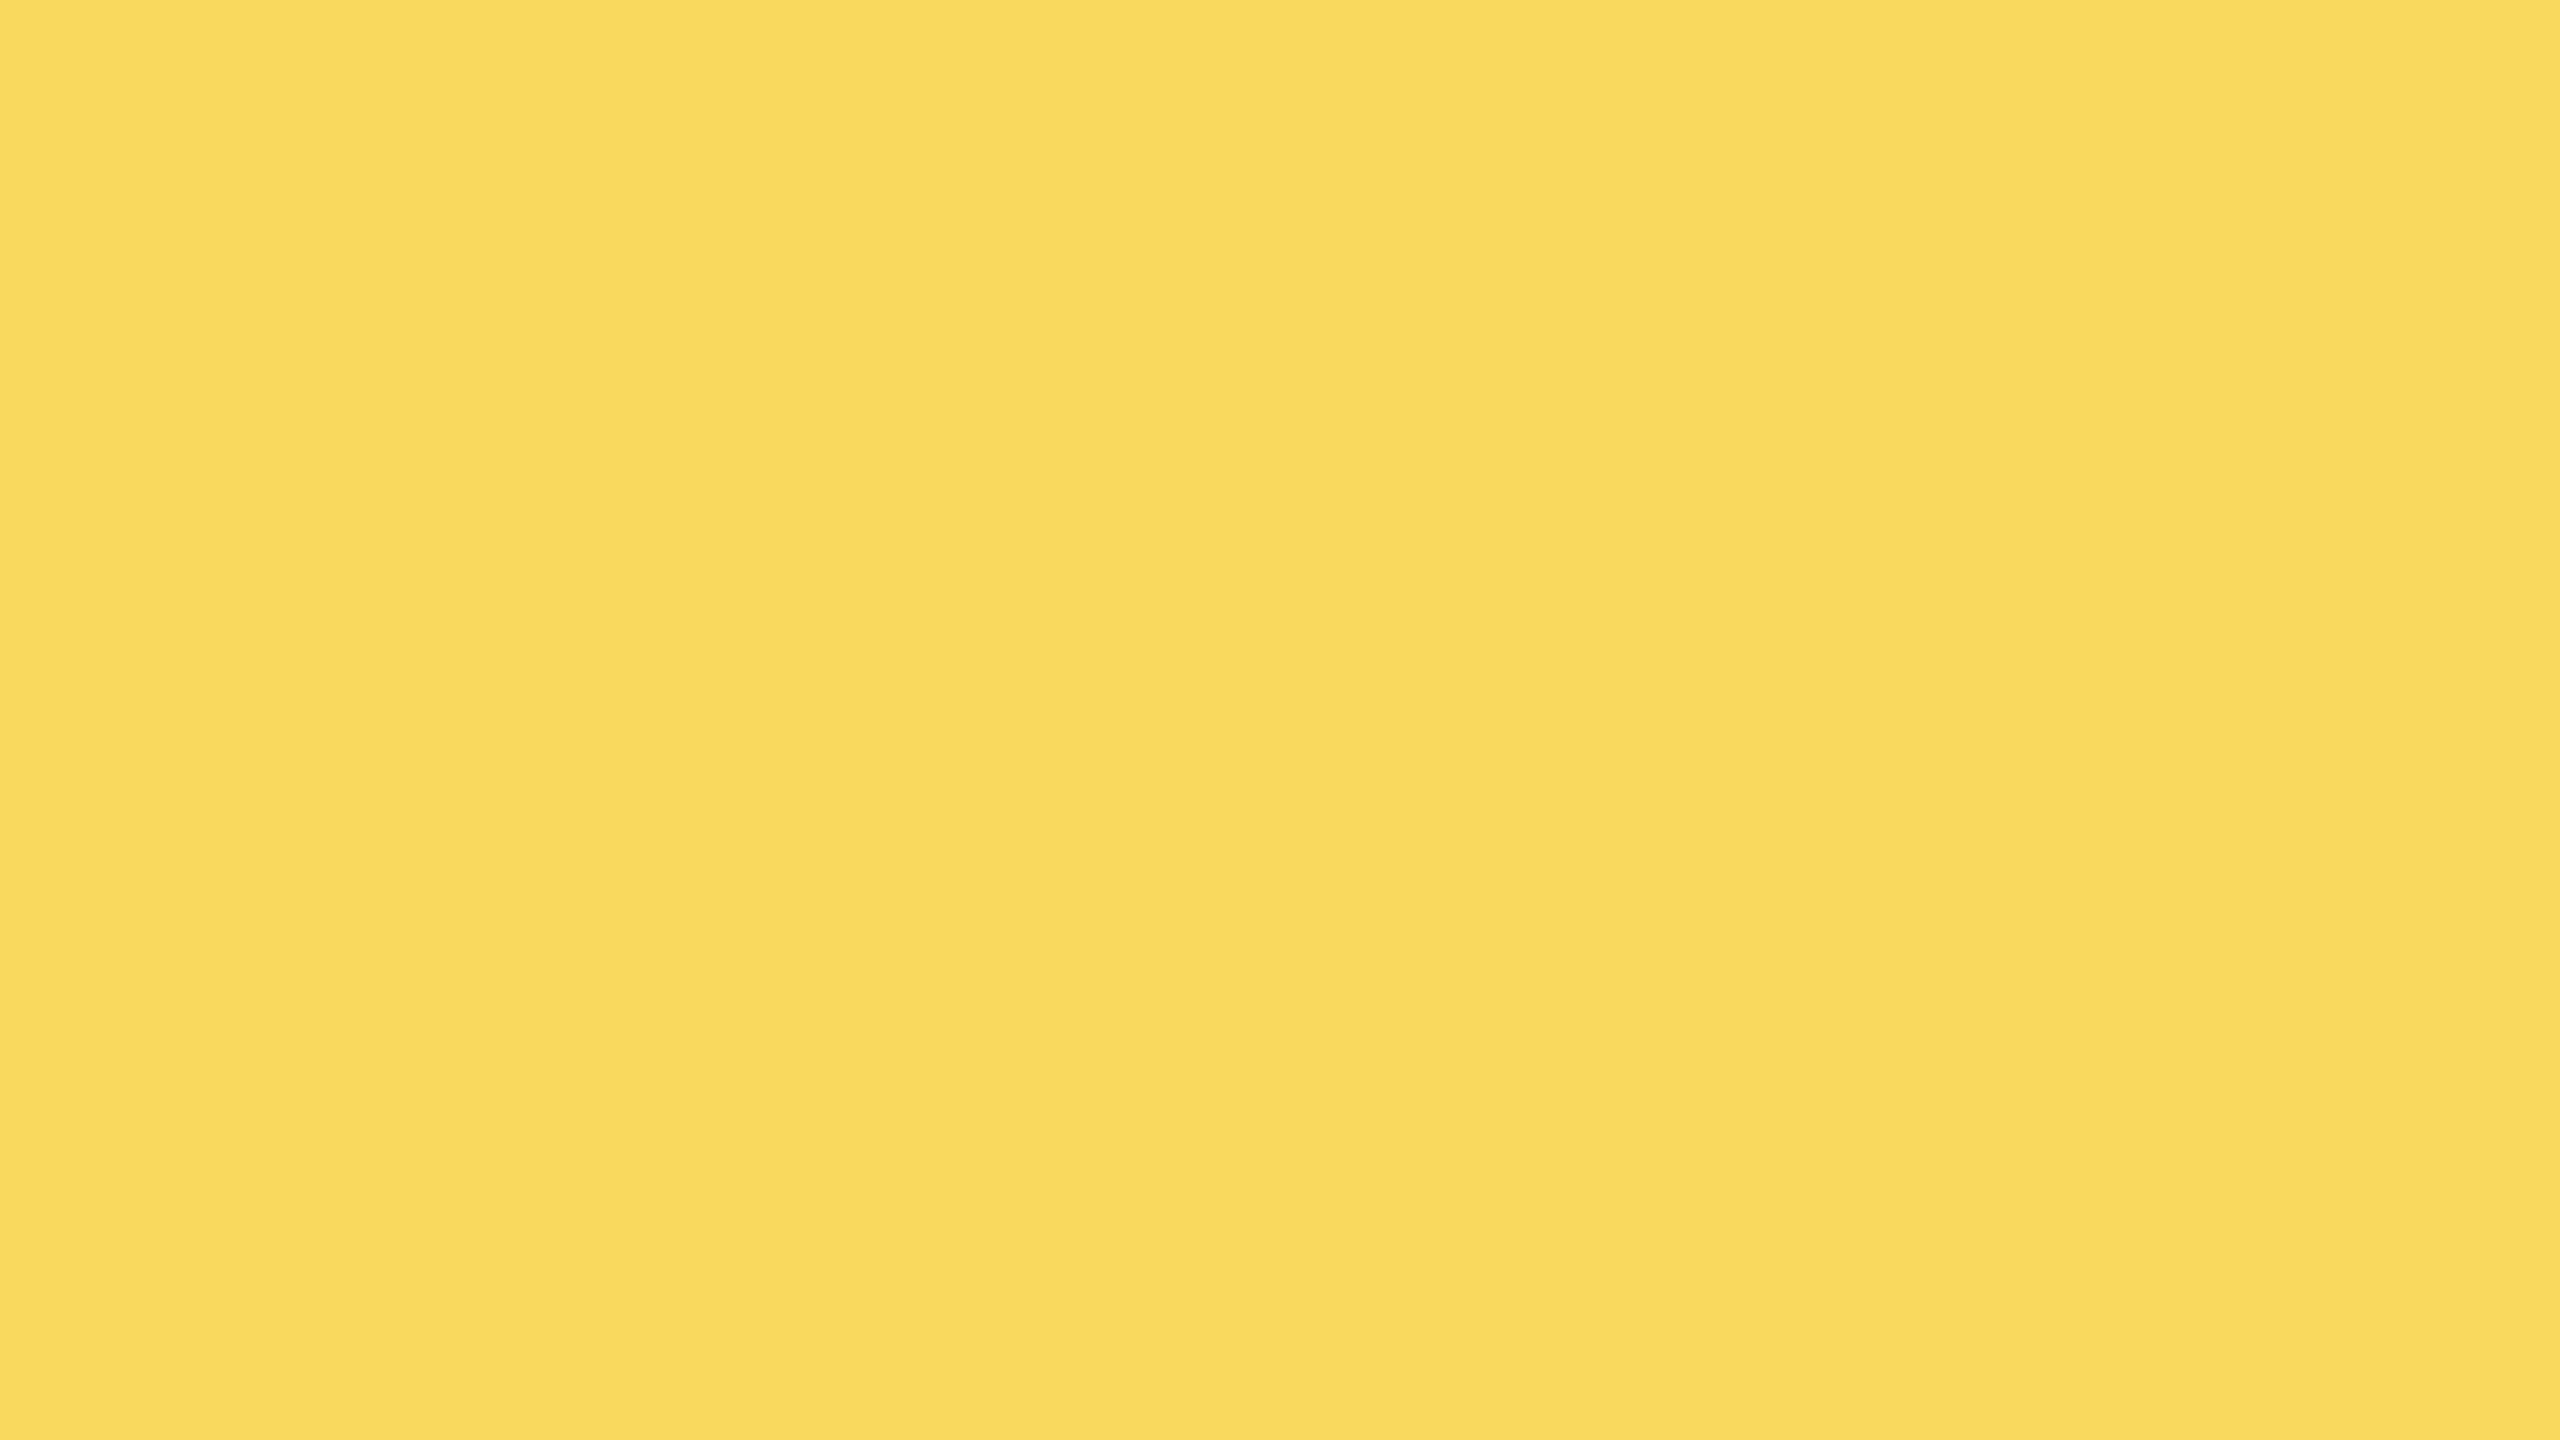 2560x1440 Stil De Grain Yellow Solid Color Background